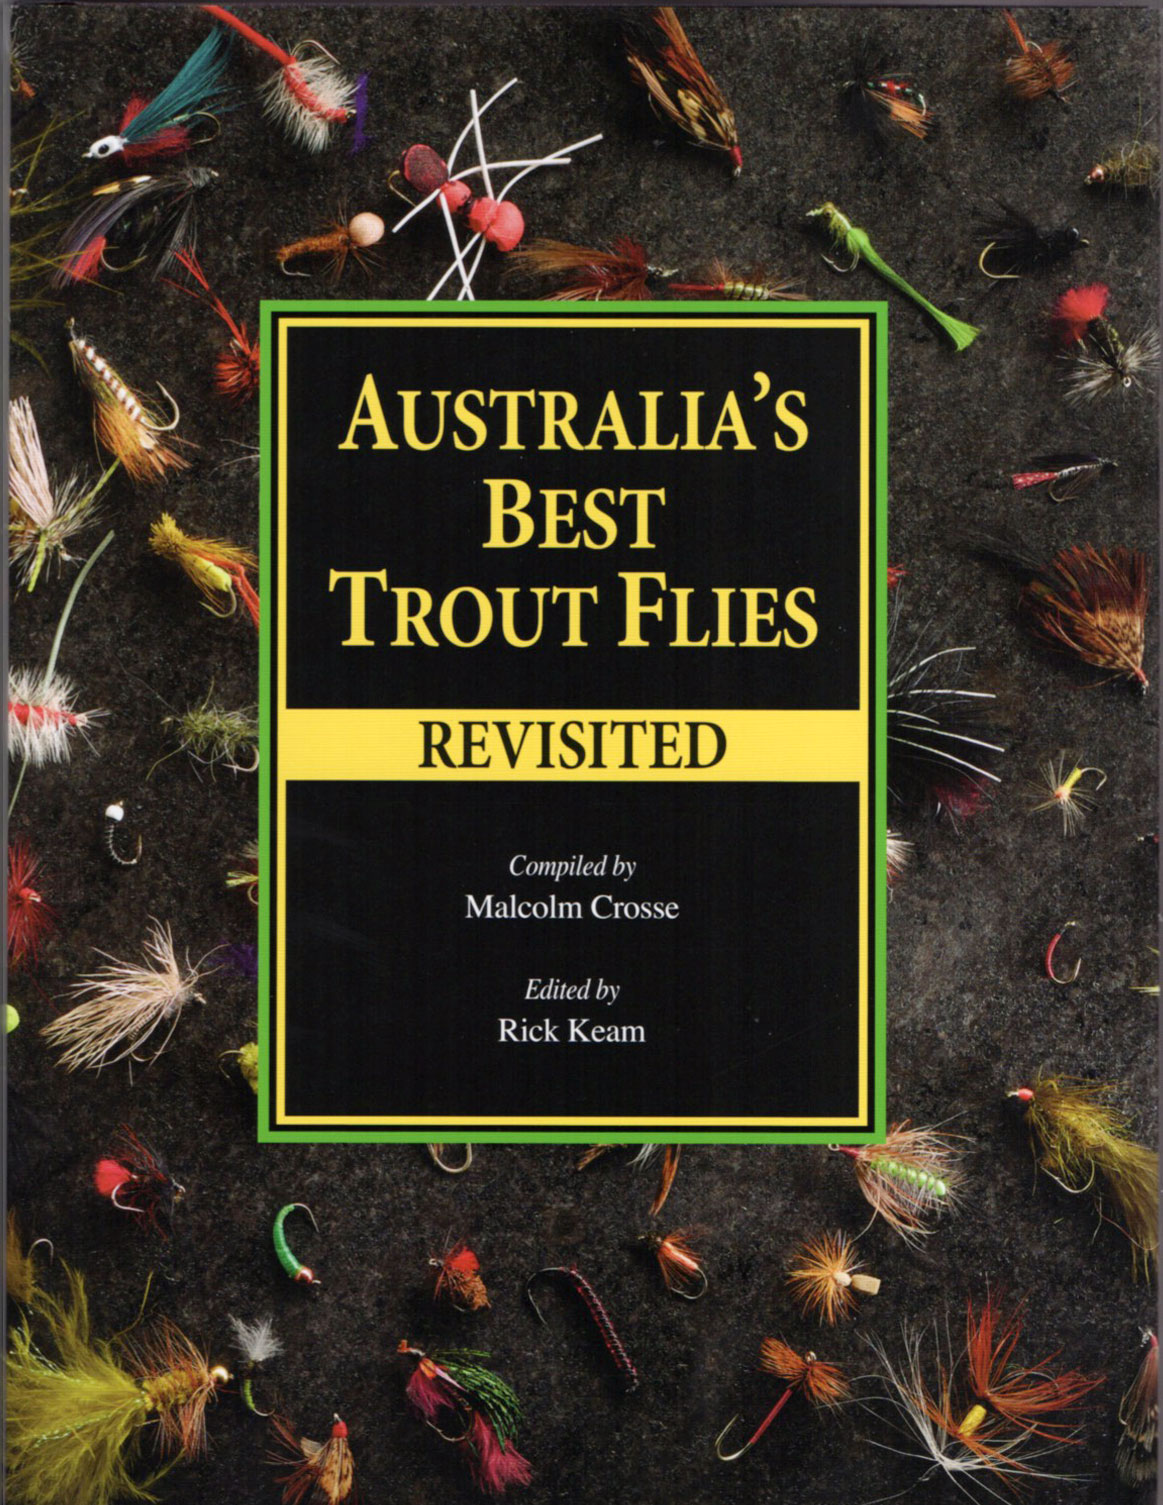 Australia's Best Trout Flies Revisited